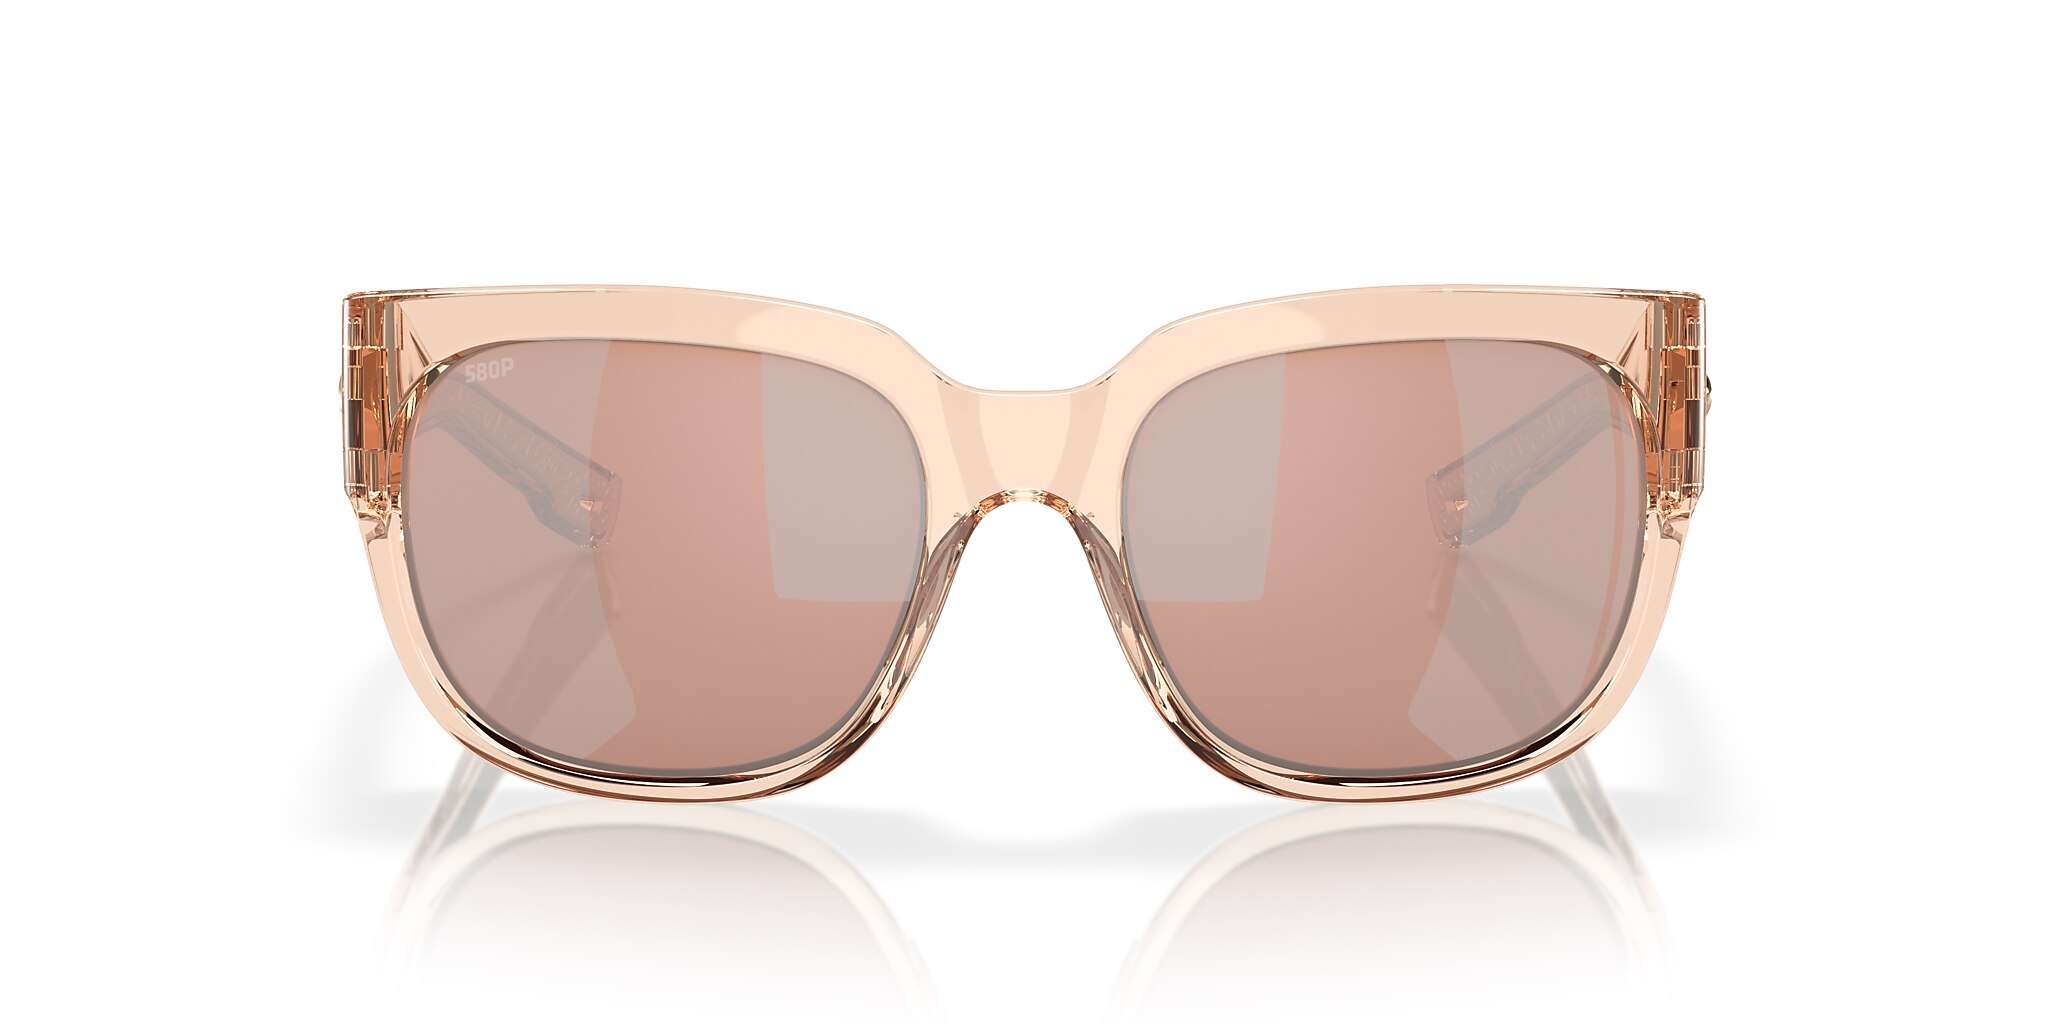 Waterwoman Polarized Sunglasses in Copper Silver Mirror | Costa